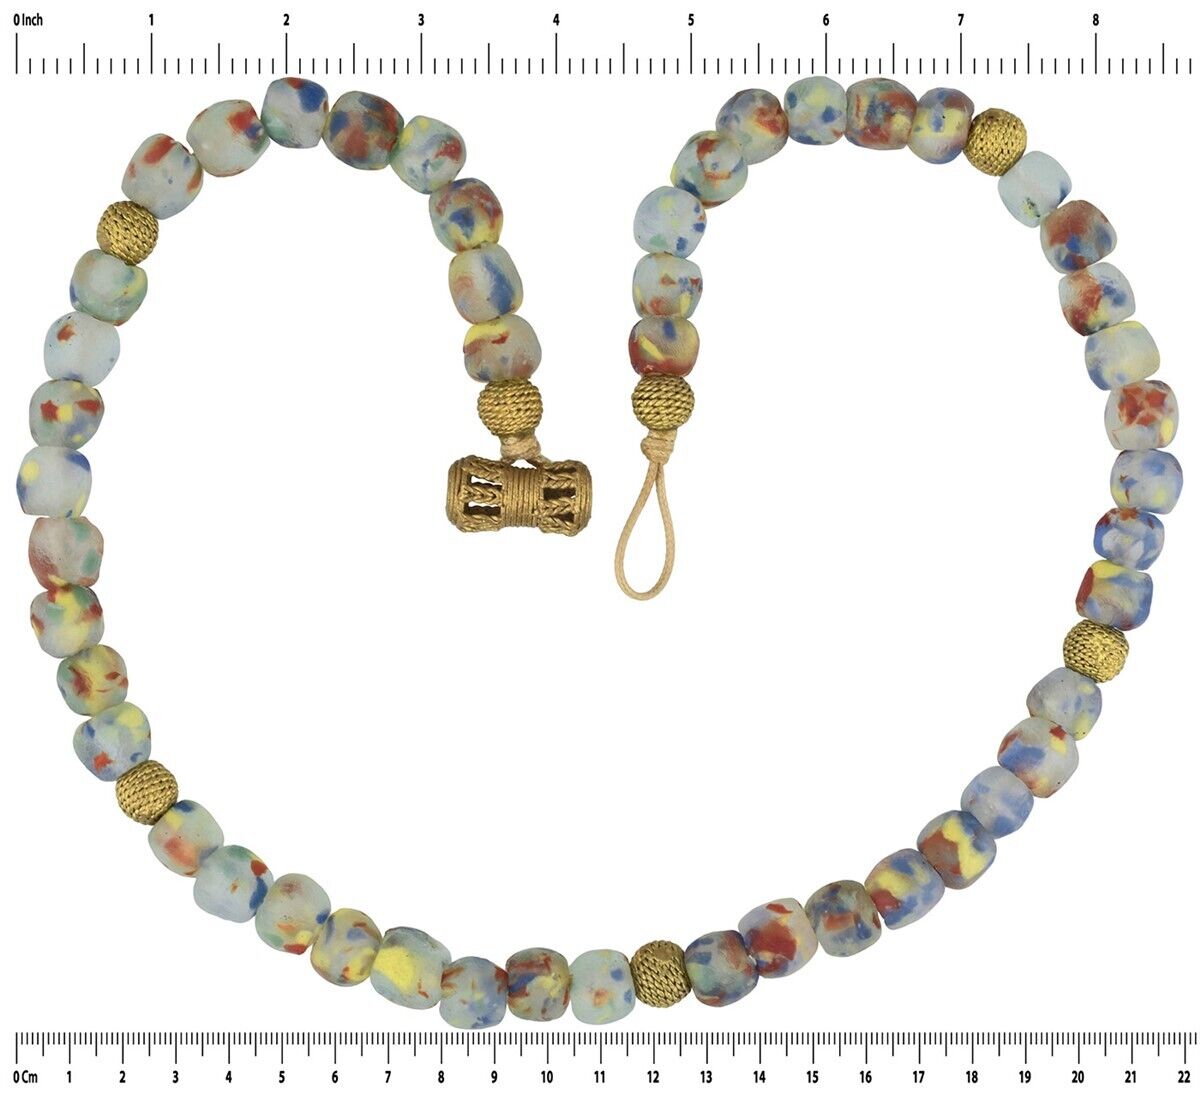 Handgefertigte Halskette aus Messing und recycelten Glasperlen Afrikanischer Schmuck - Tribalgh